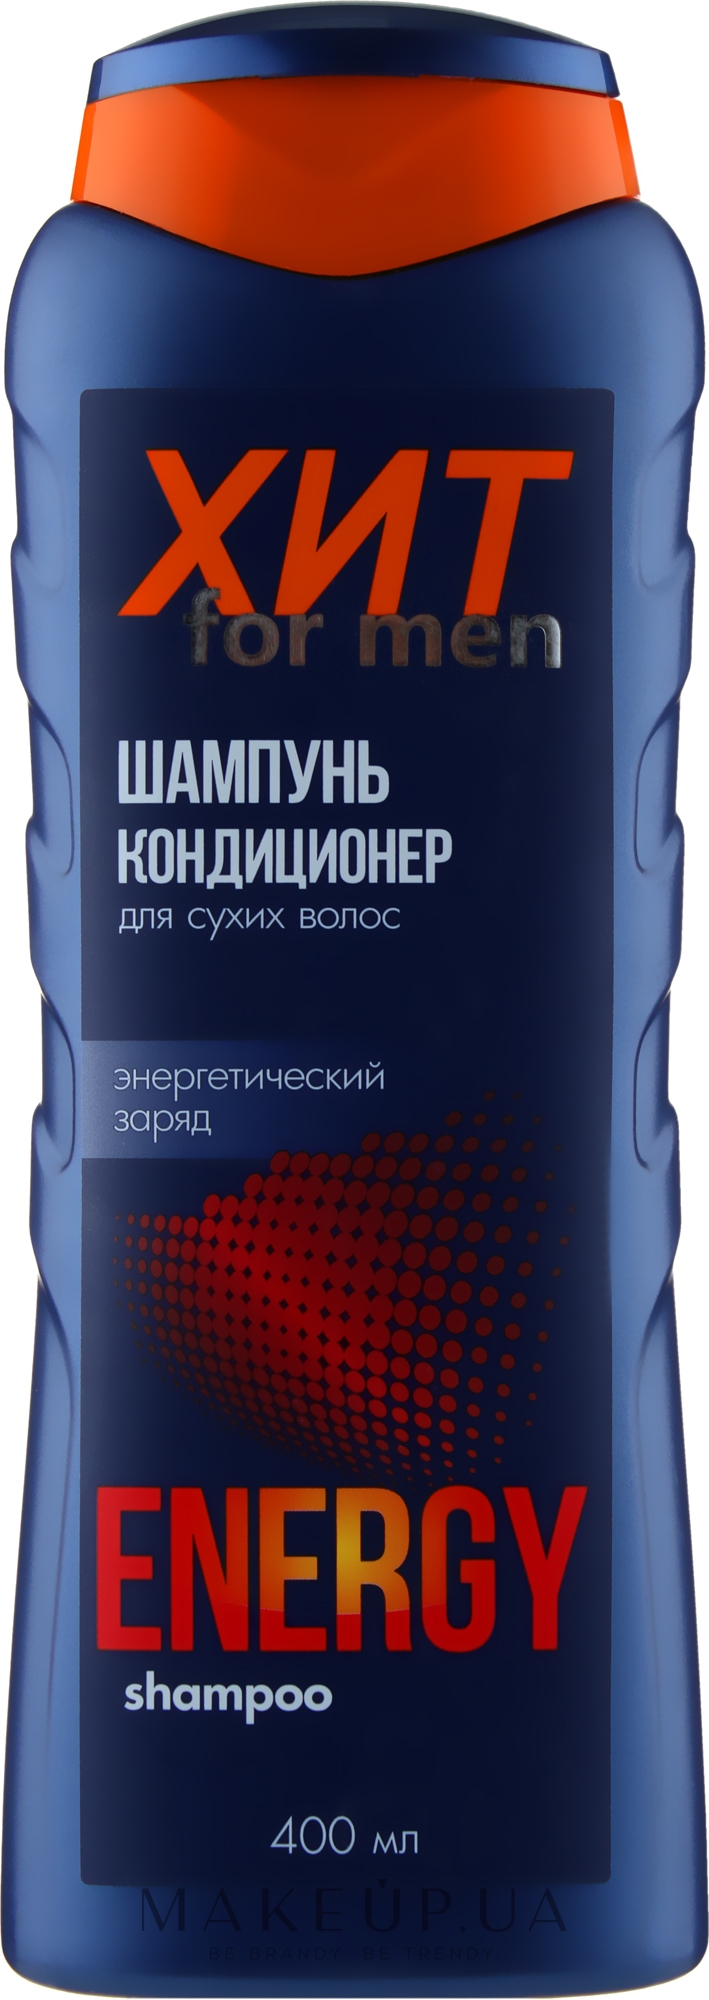 Шампунь-кондиционер мужской для сухих волос "Хит" - Аромат — фото 400ml